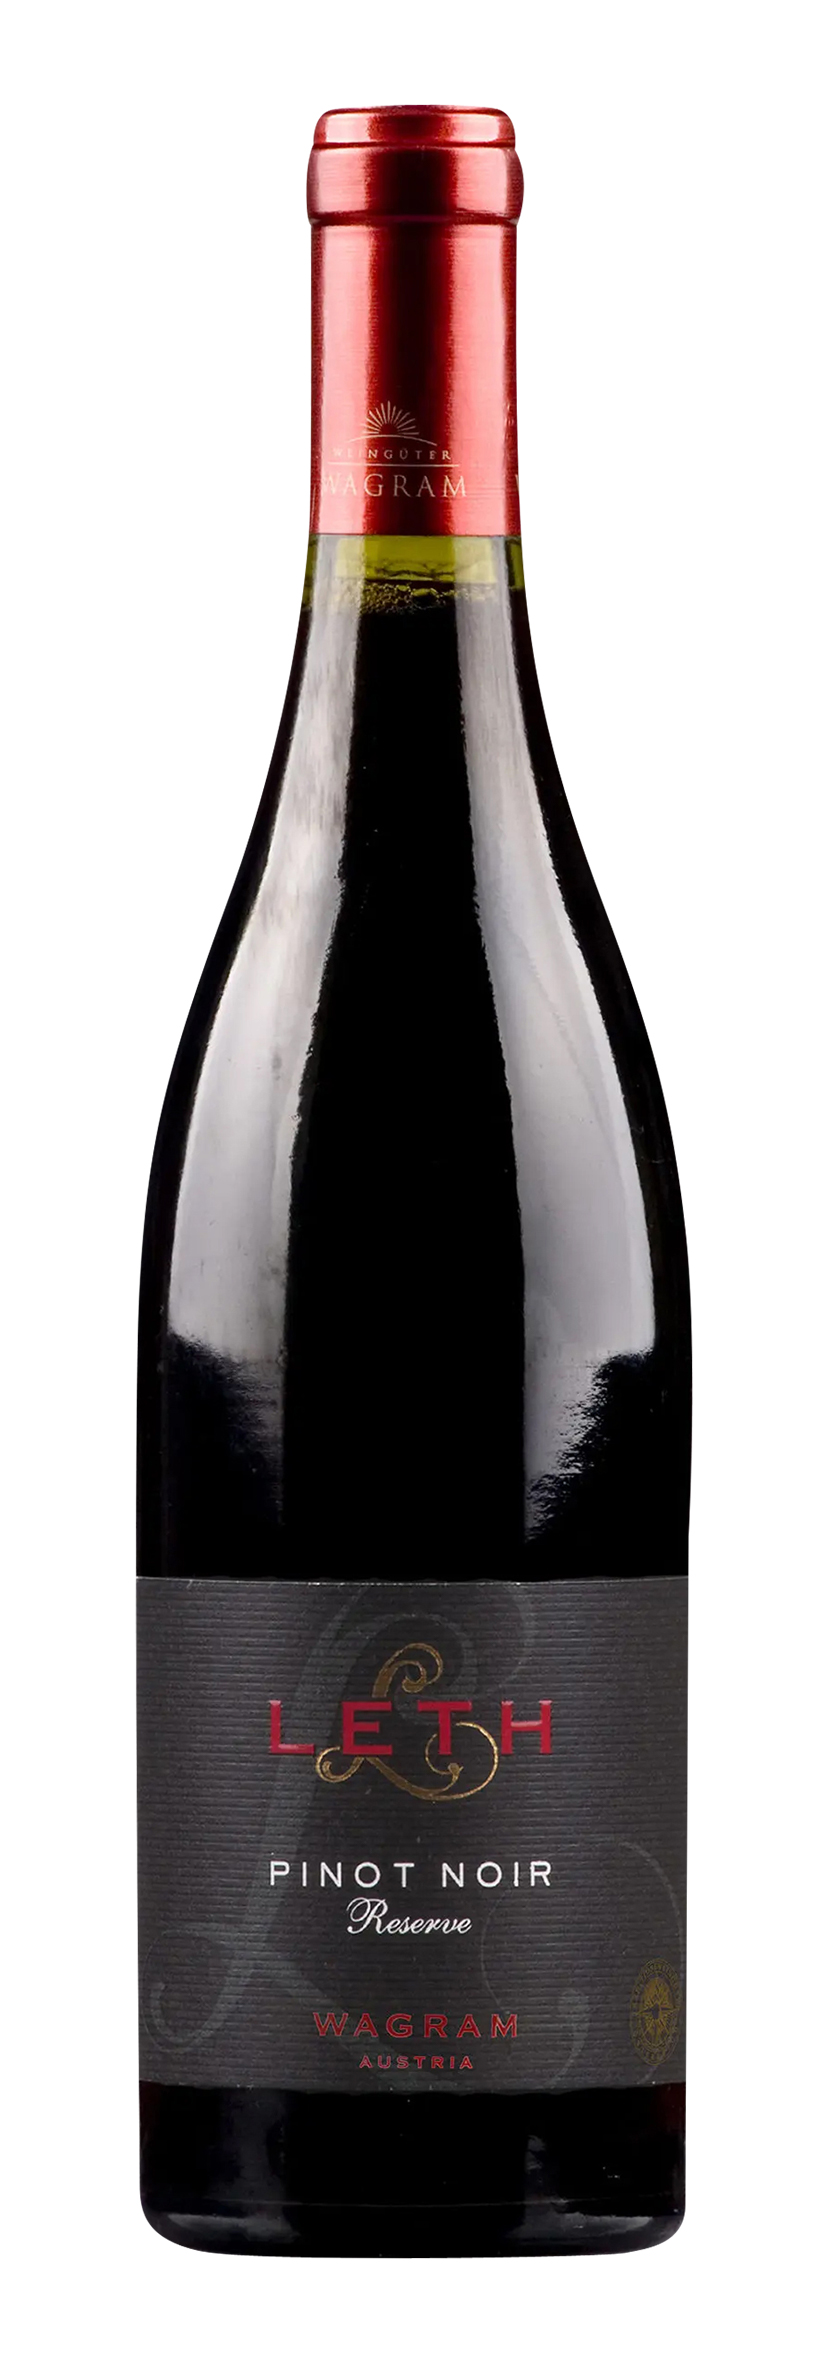 Wagram DAC Pinot Noir Reserve 2021